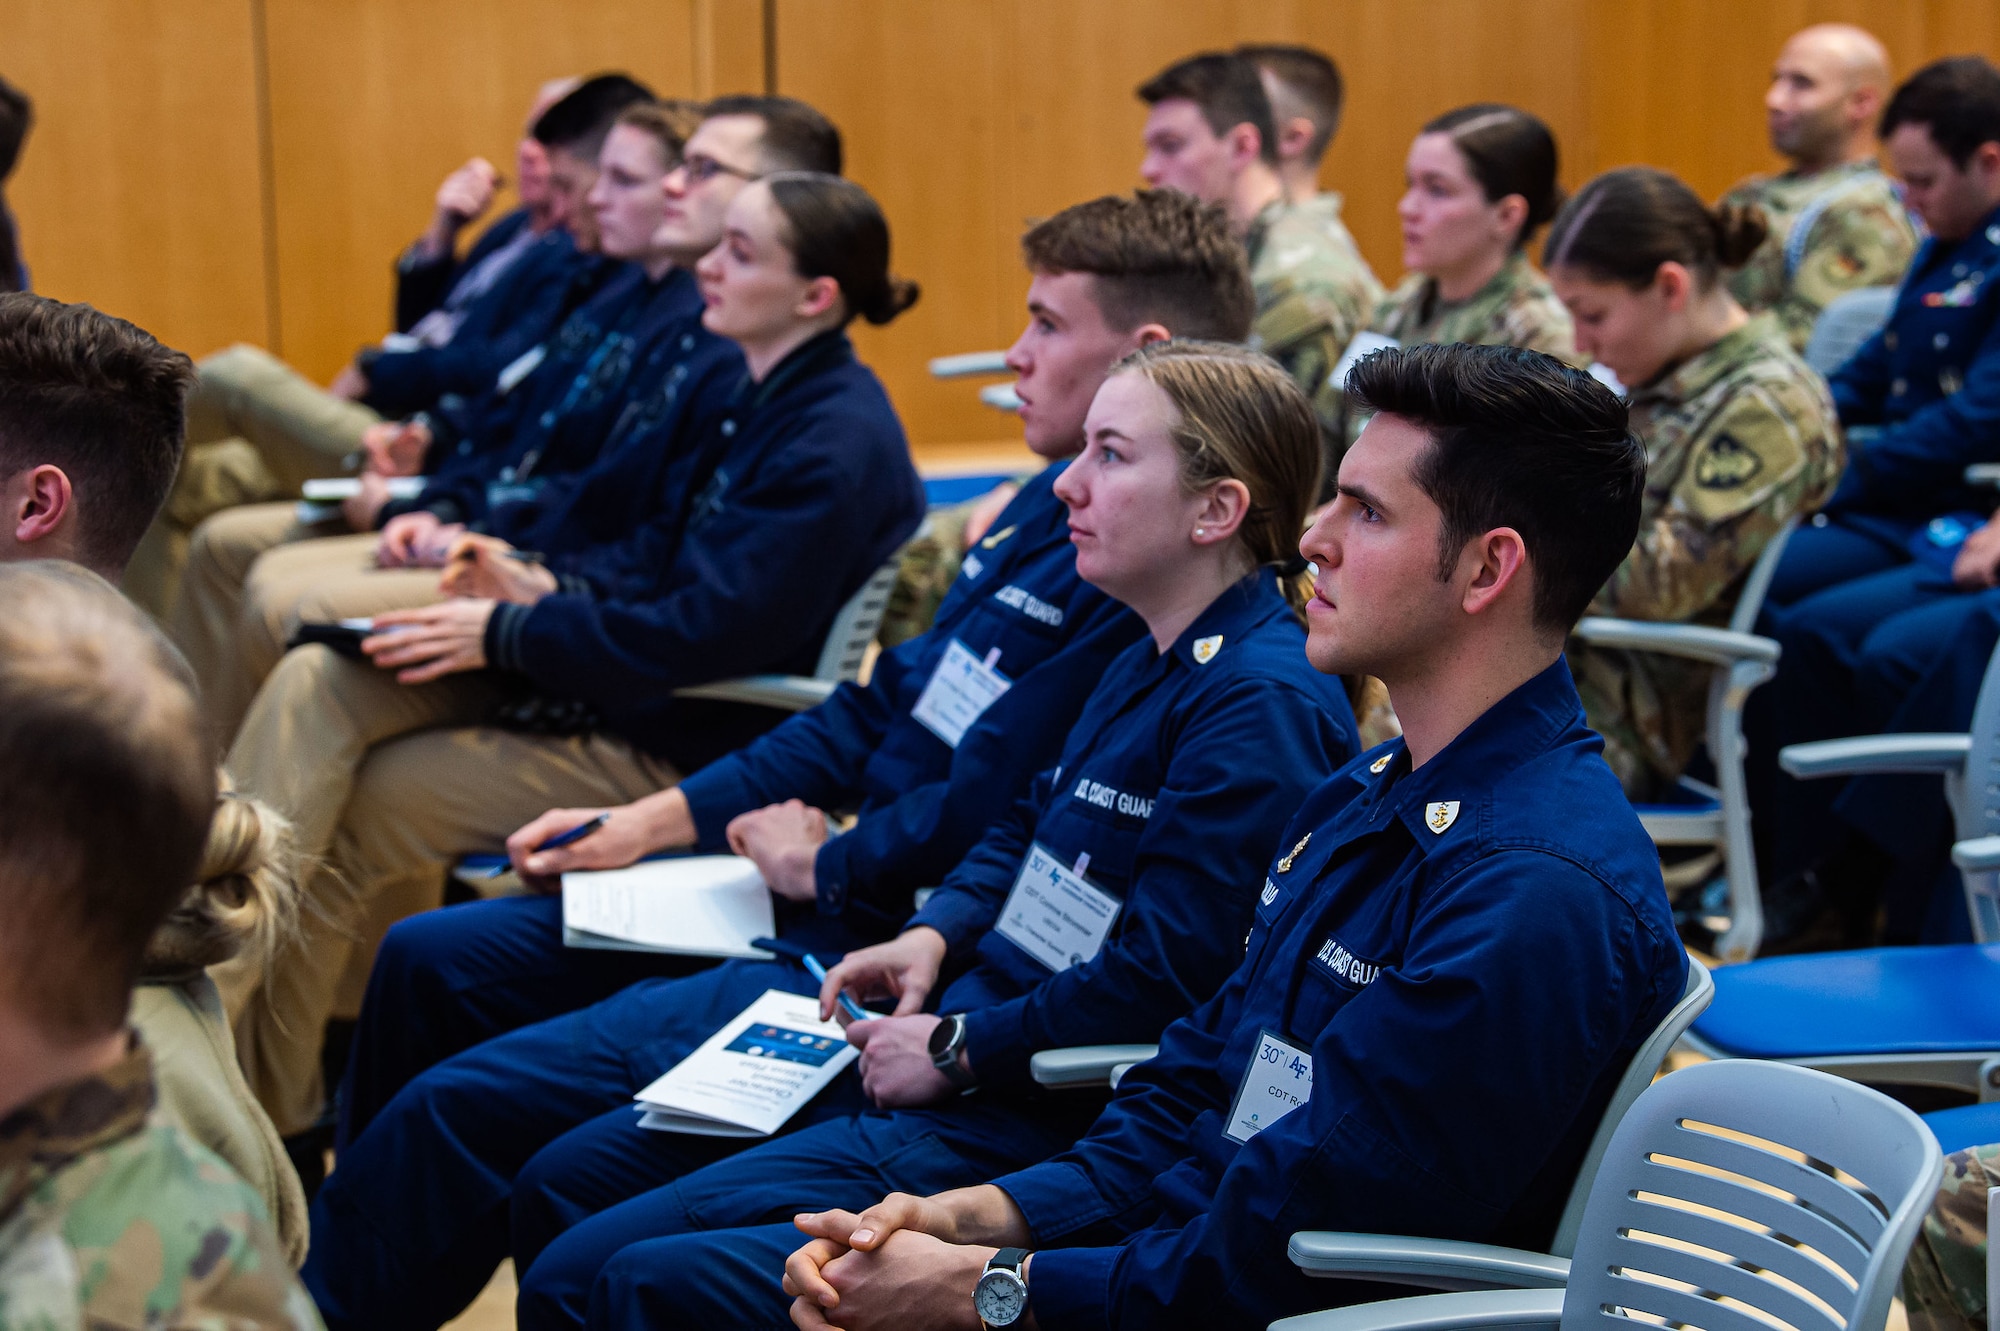 Cadets attending an NCLS event.